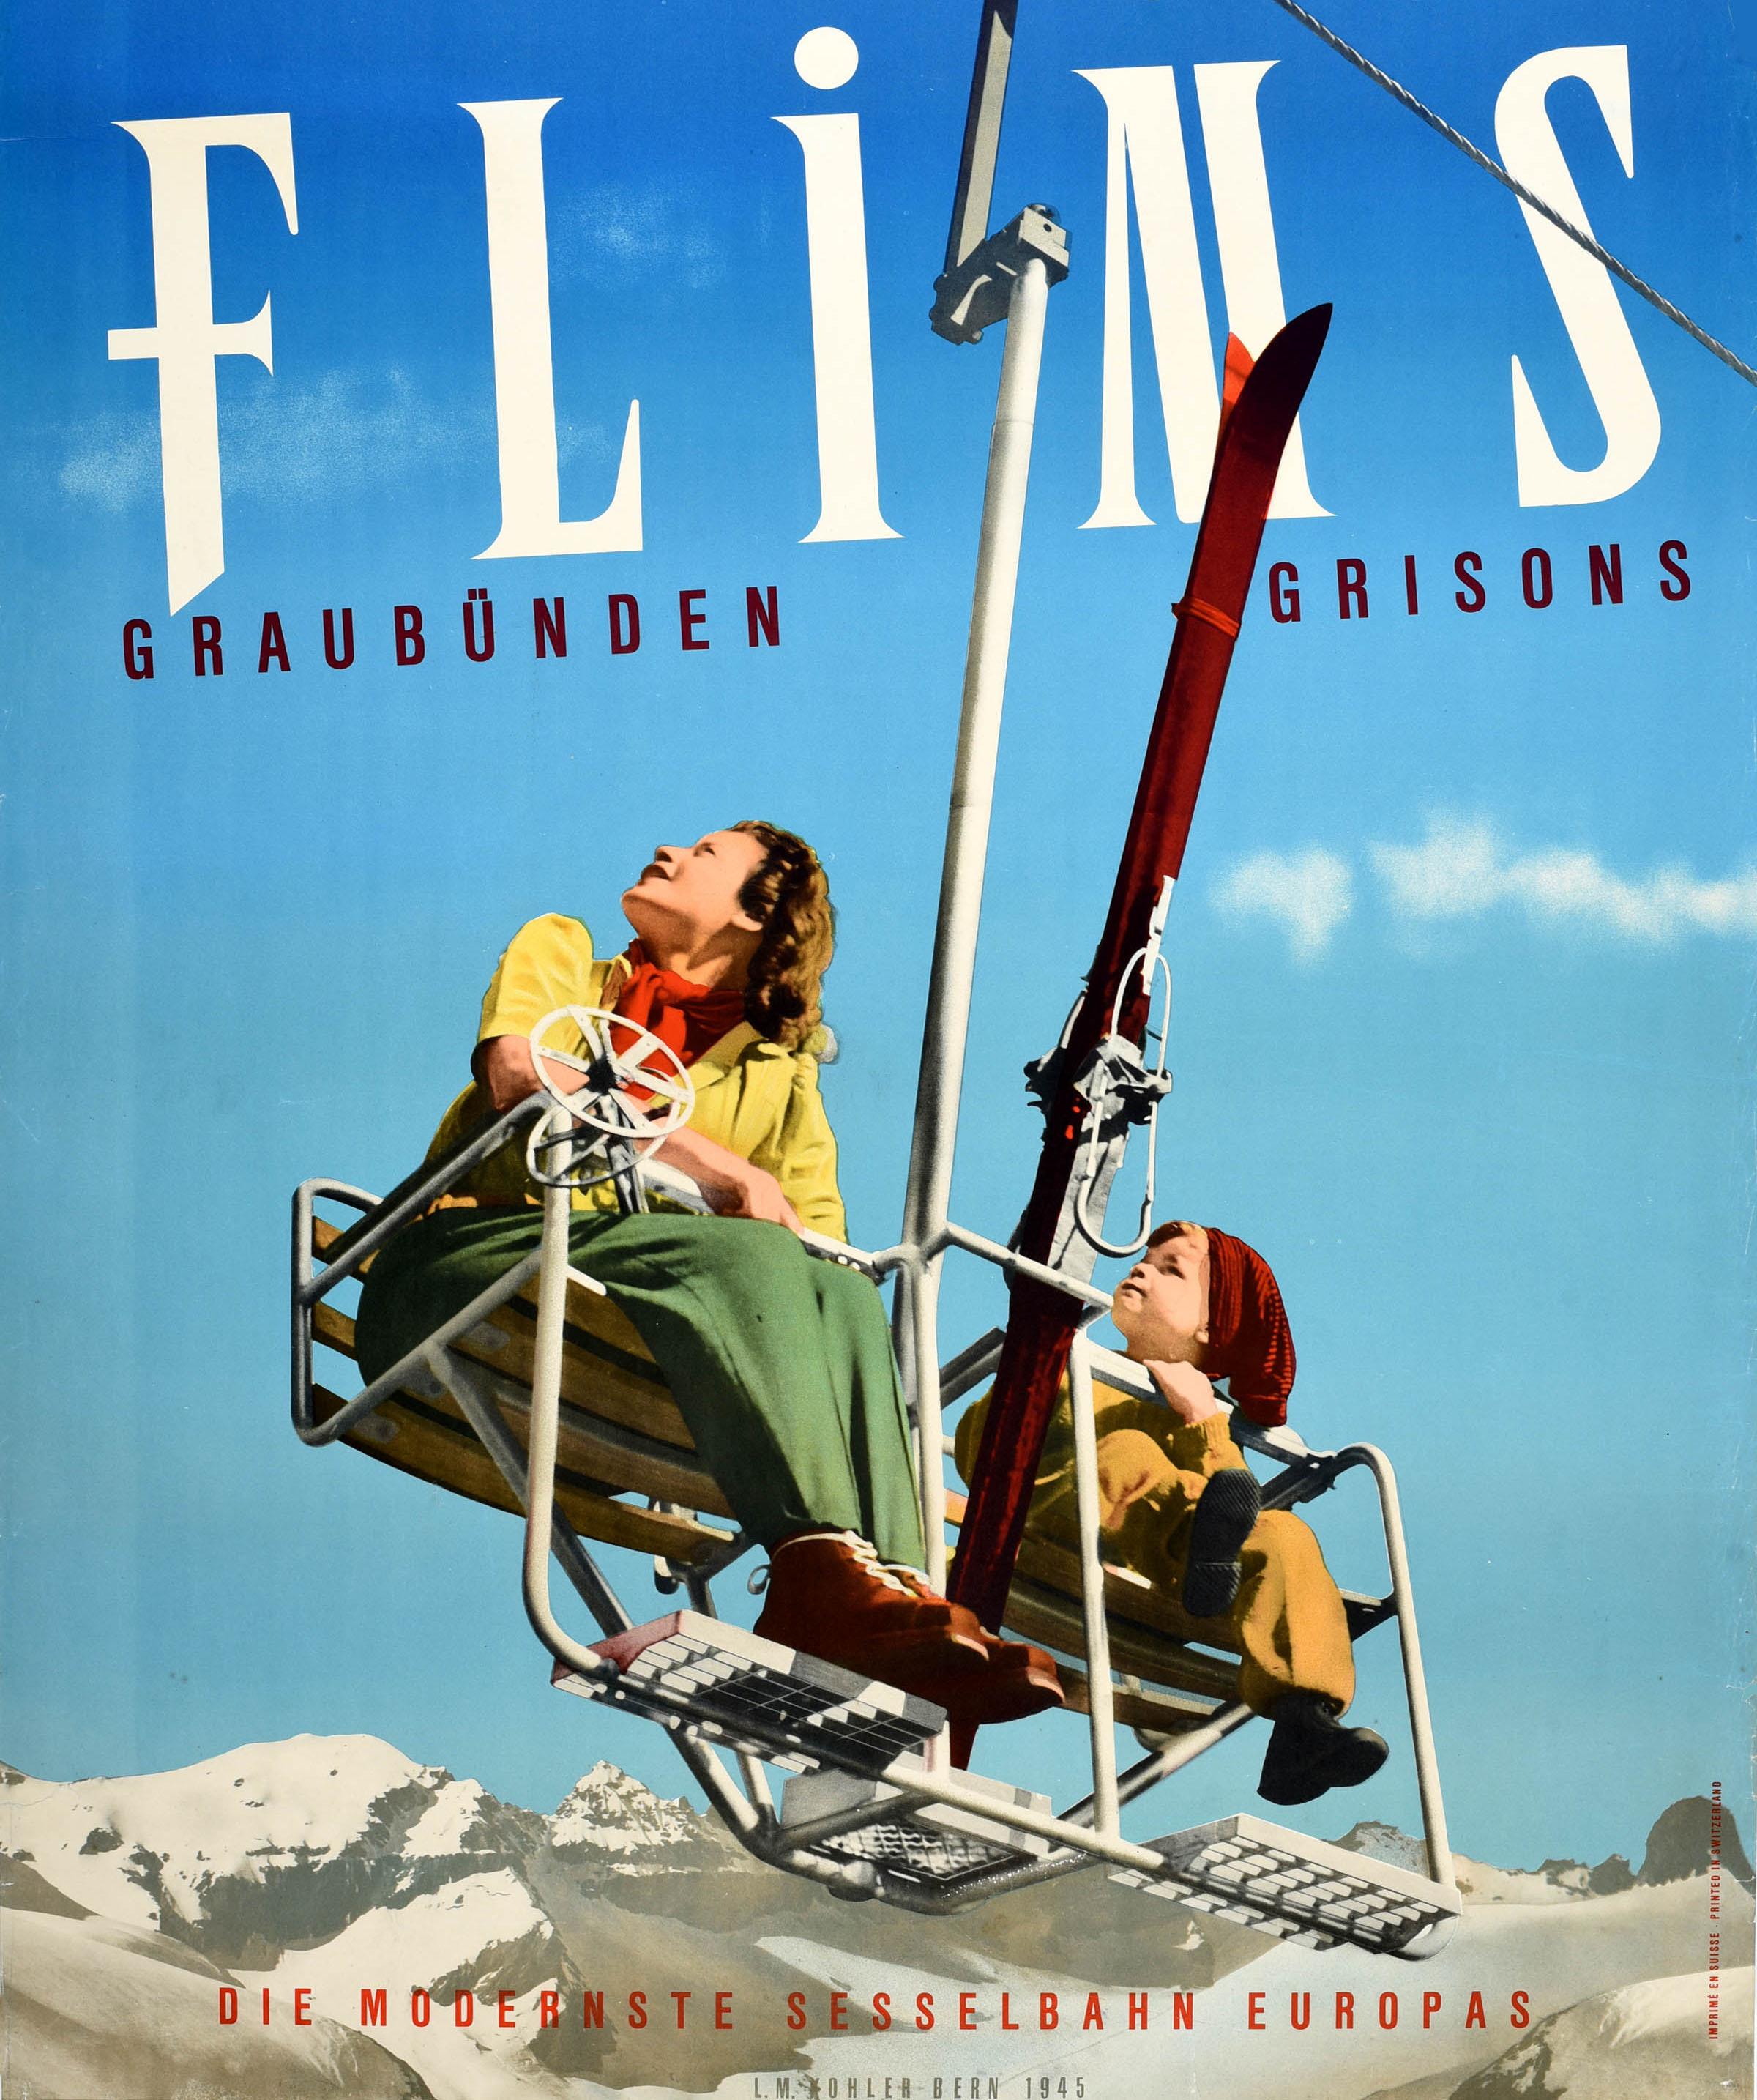 Originales Vintage-Skiplakat für Flims Graubünden Graubünden die modernste Sesselbahn Europas / the most modern chairlift in Europe. Das farbenfrohe Design zeigt eine Dame in Skischuhen und mit Skistöcken in der Hand, während ein Kind auf dem